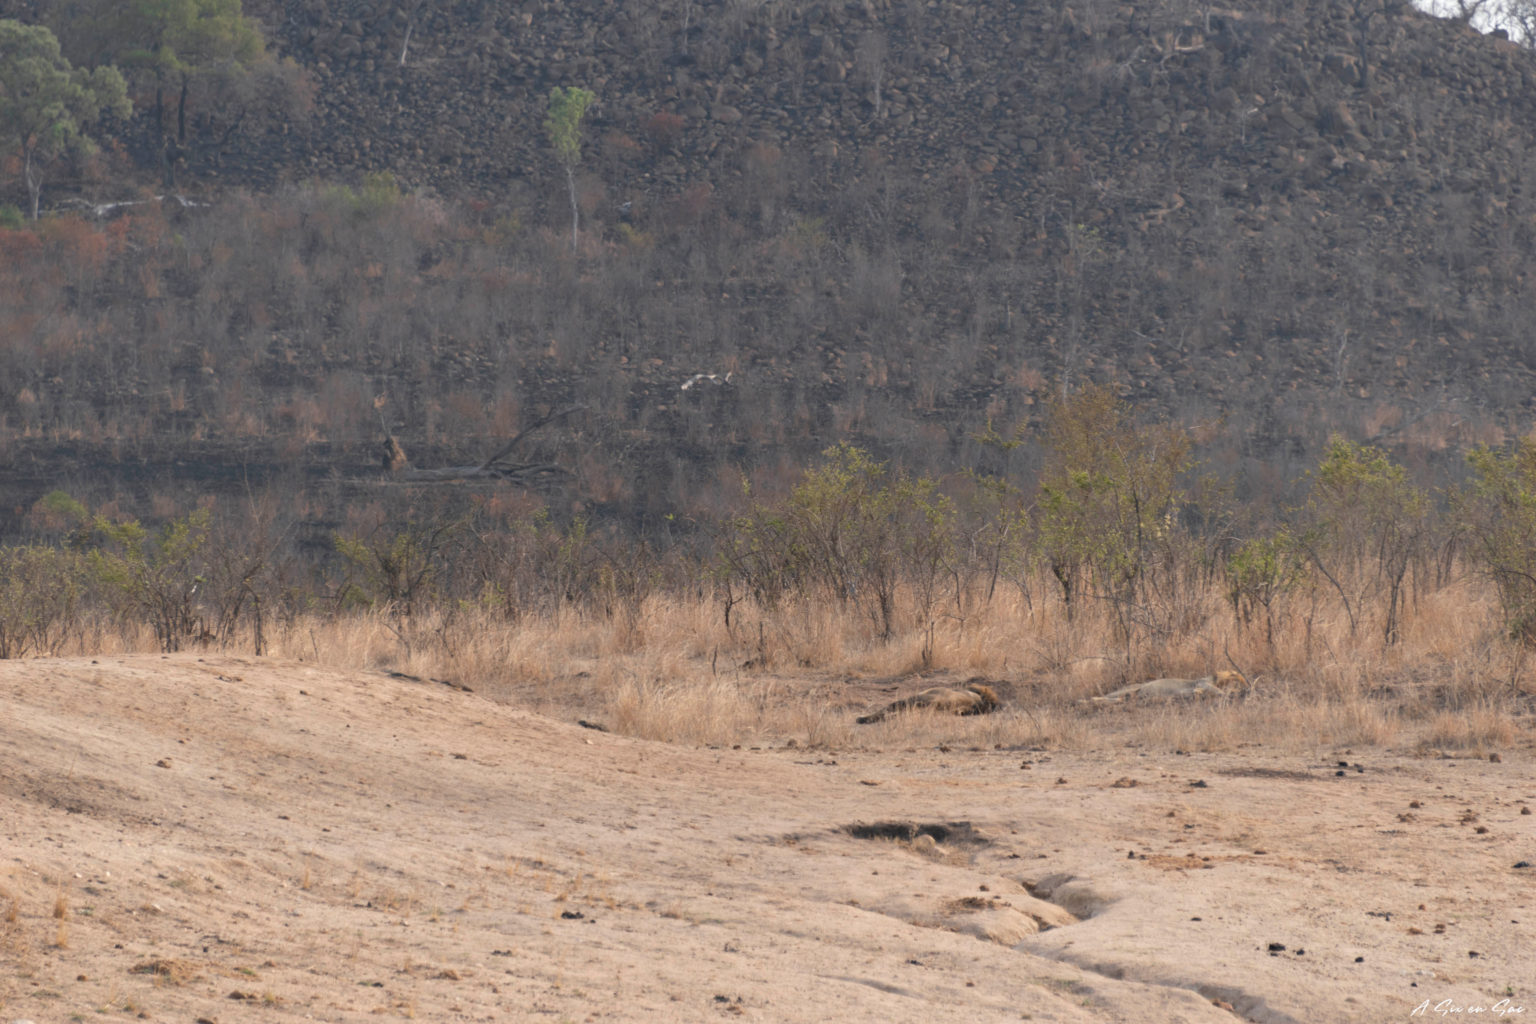 lions au loin endormis dans la partie sud du parc kruger pendant notre safari autonome